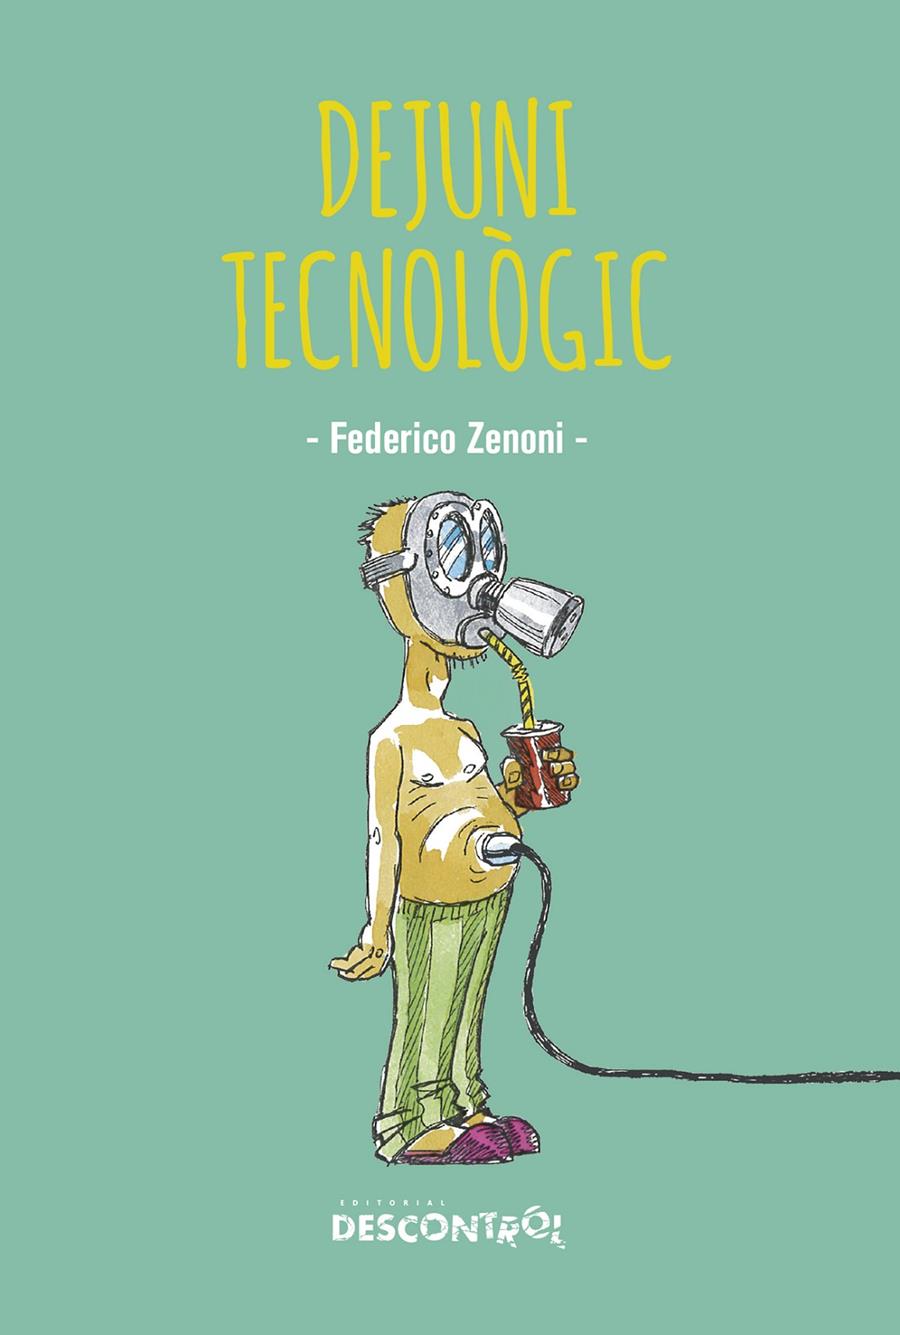 Dejuni tecnològic | Zenoni, Federico  | Cooperativa autogestionària